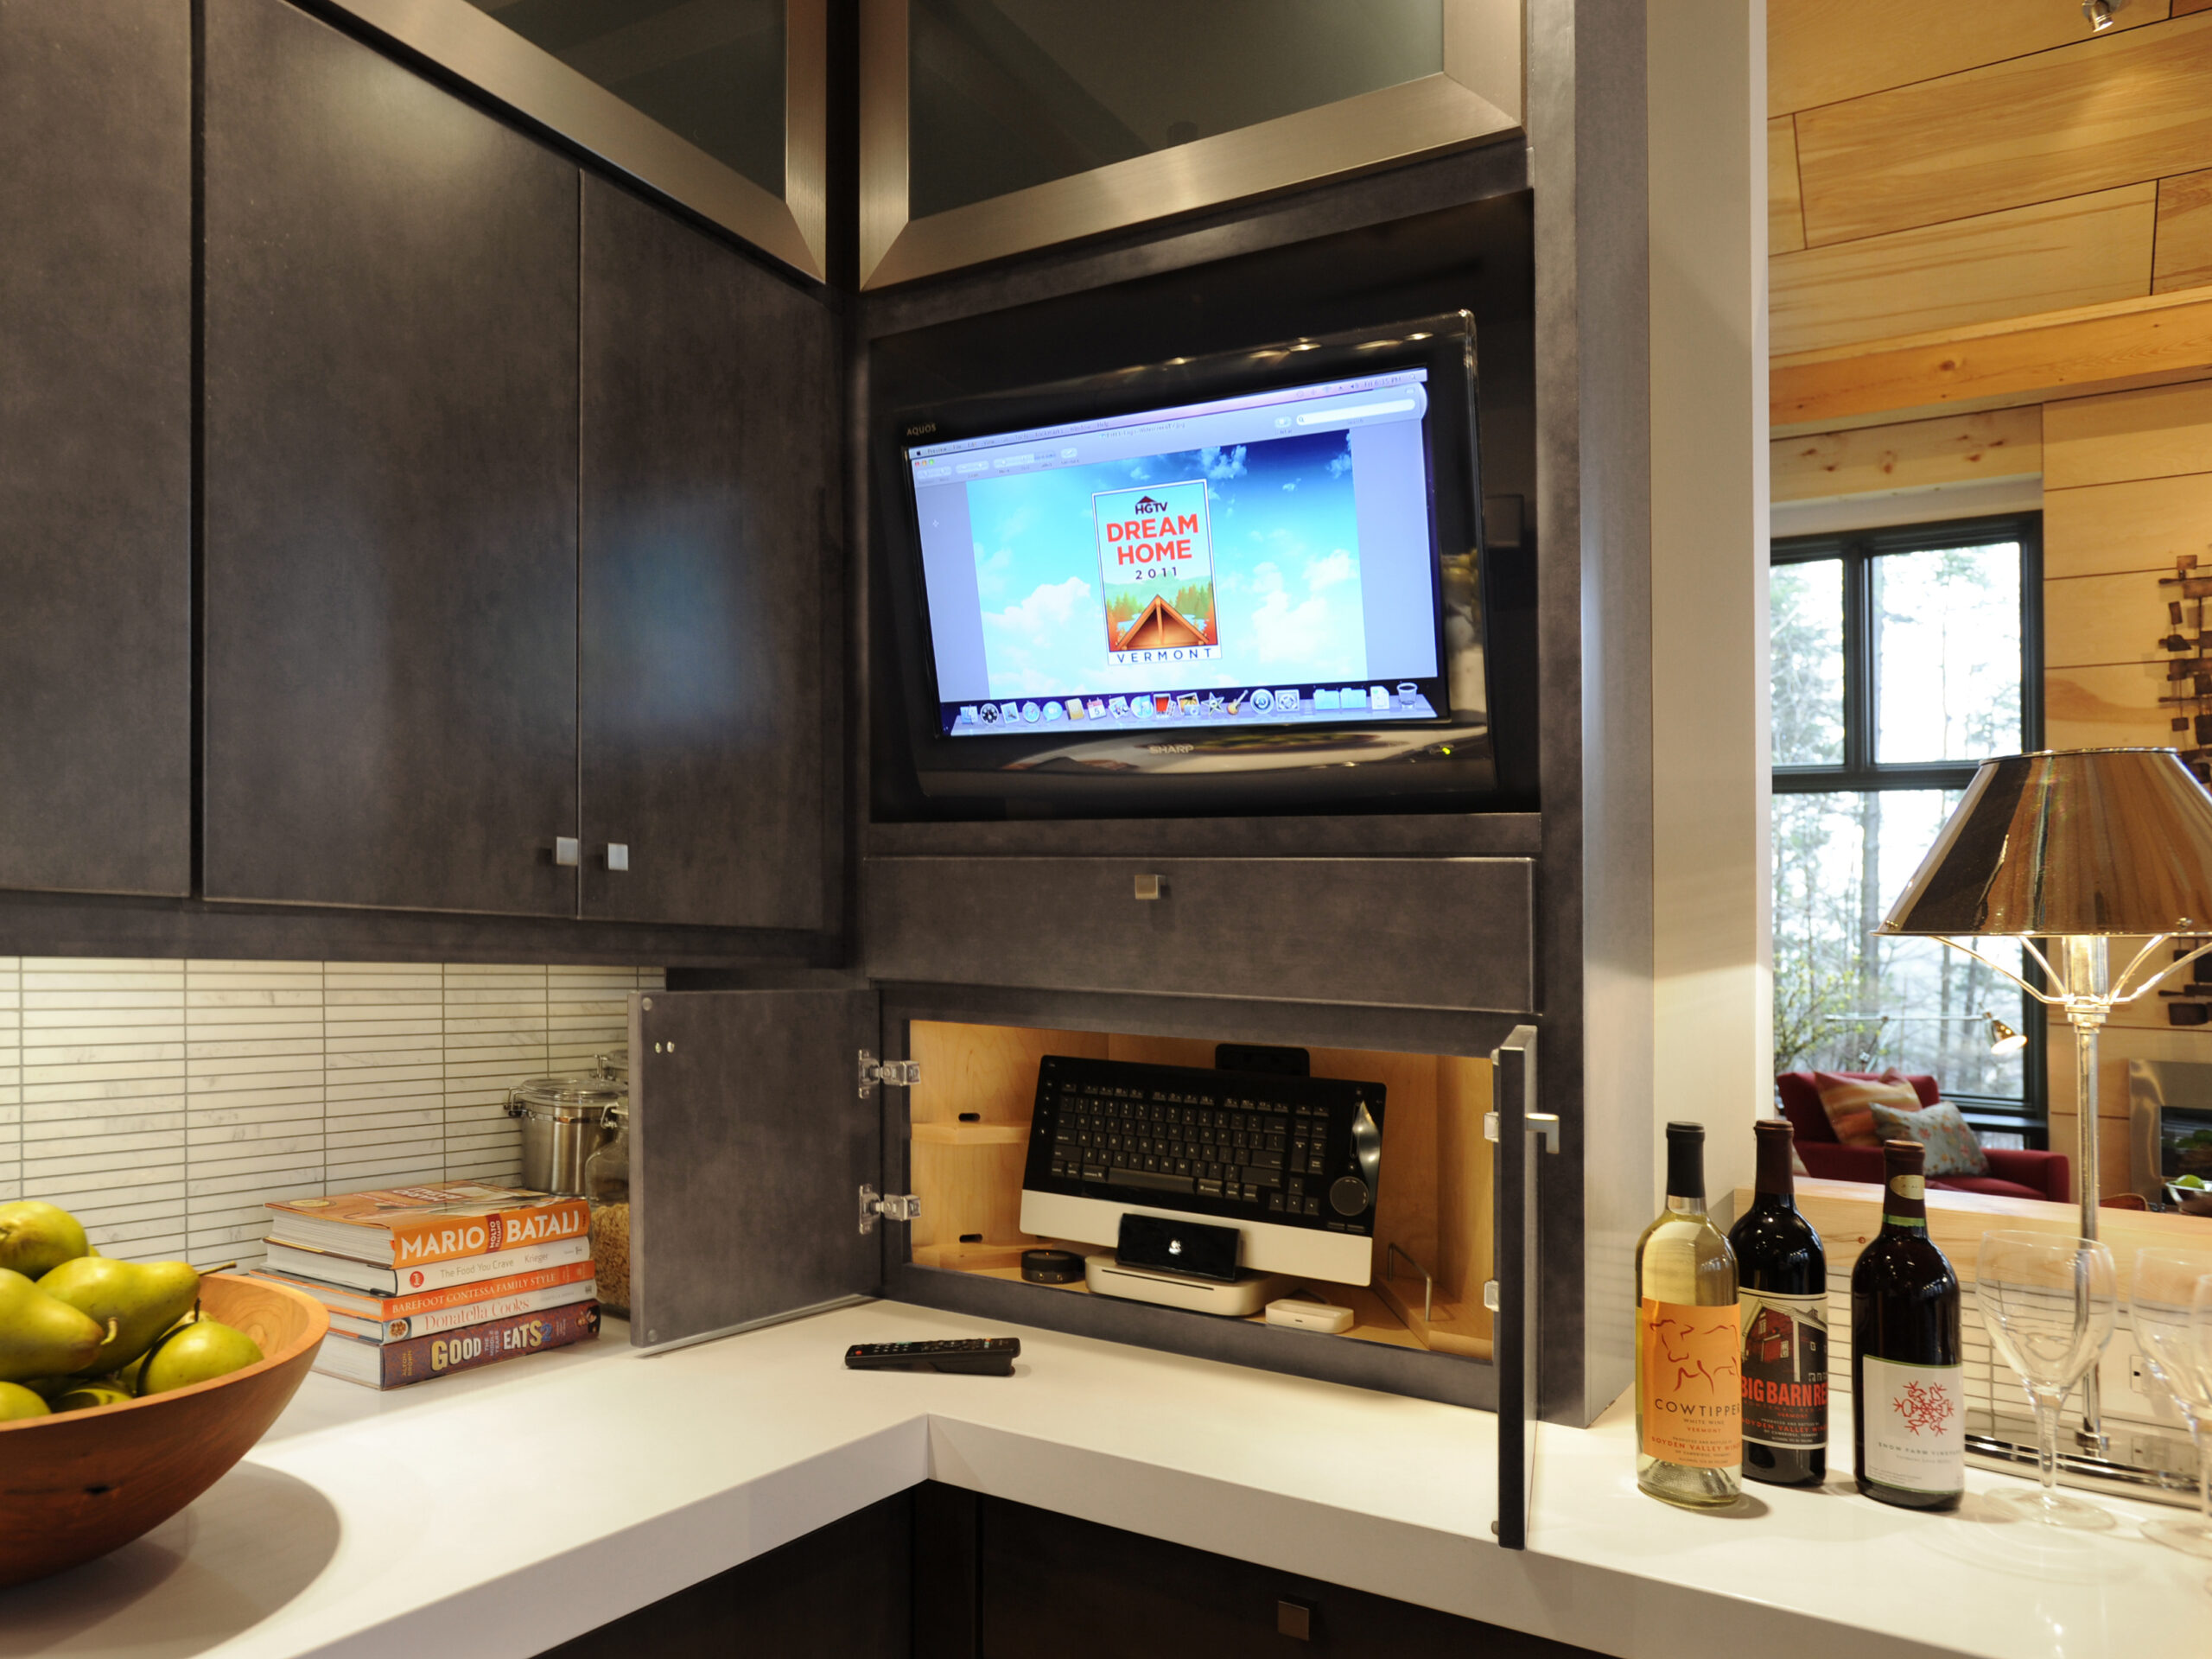 Телевизор на 1.12 2. Телевизор на кухне. Встроенный телевизор в кухонный гарнитур. Телевизор встроенный в кухню. Телевизор встраиваемый в кухонный гарнитур.